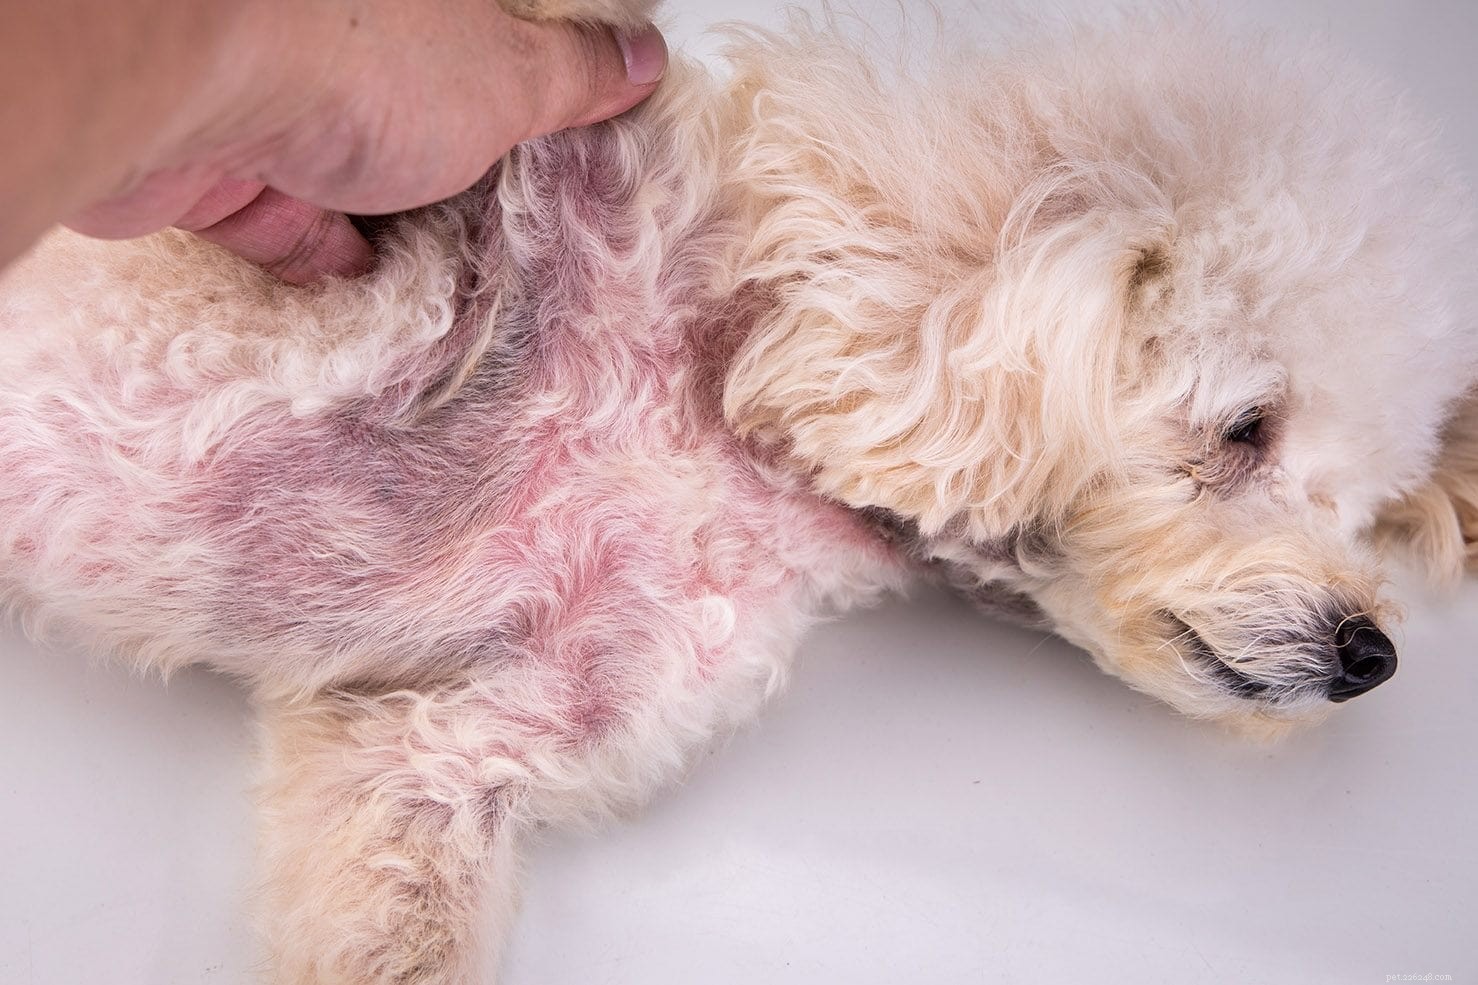 Малассезиозный дерматит (дрожжевые инфекции) у собак:причины, лечение, профилактика